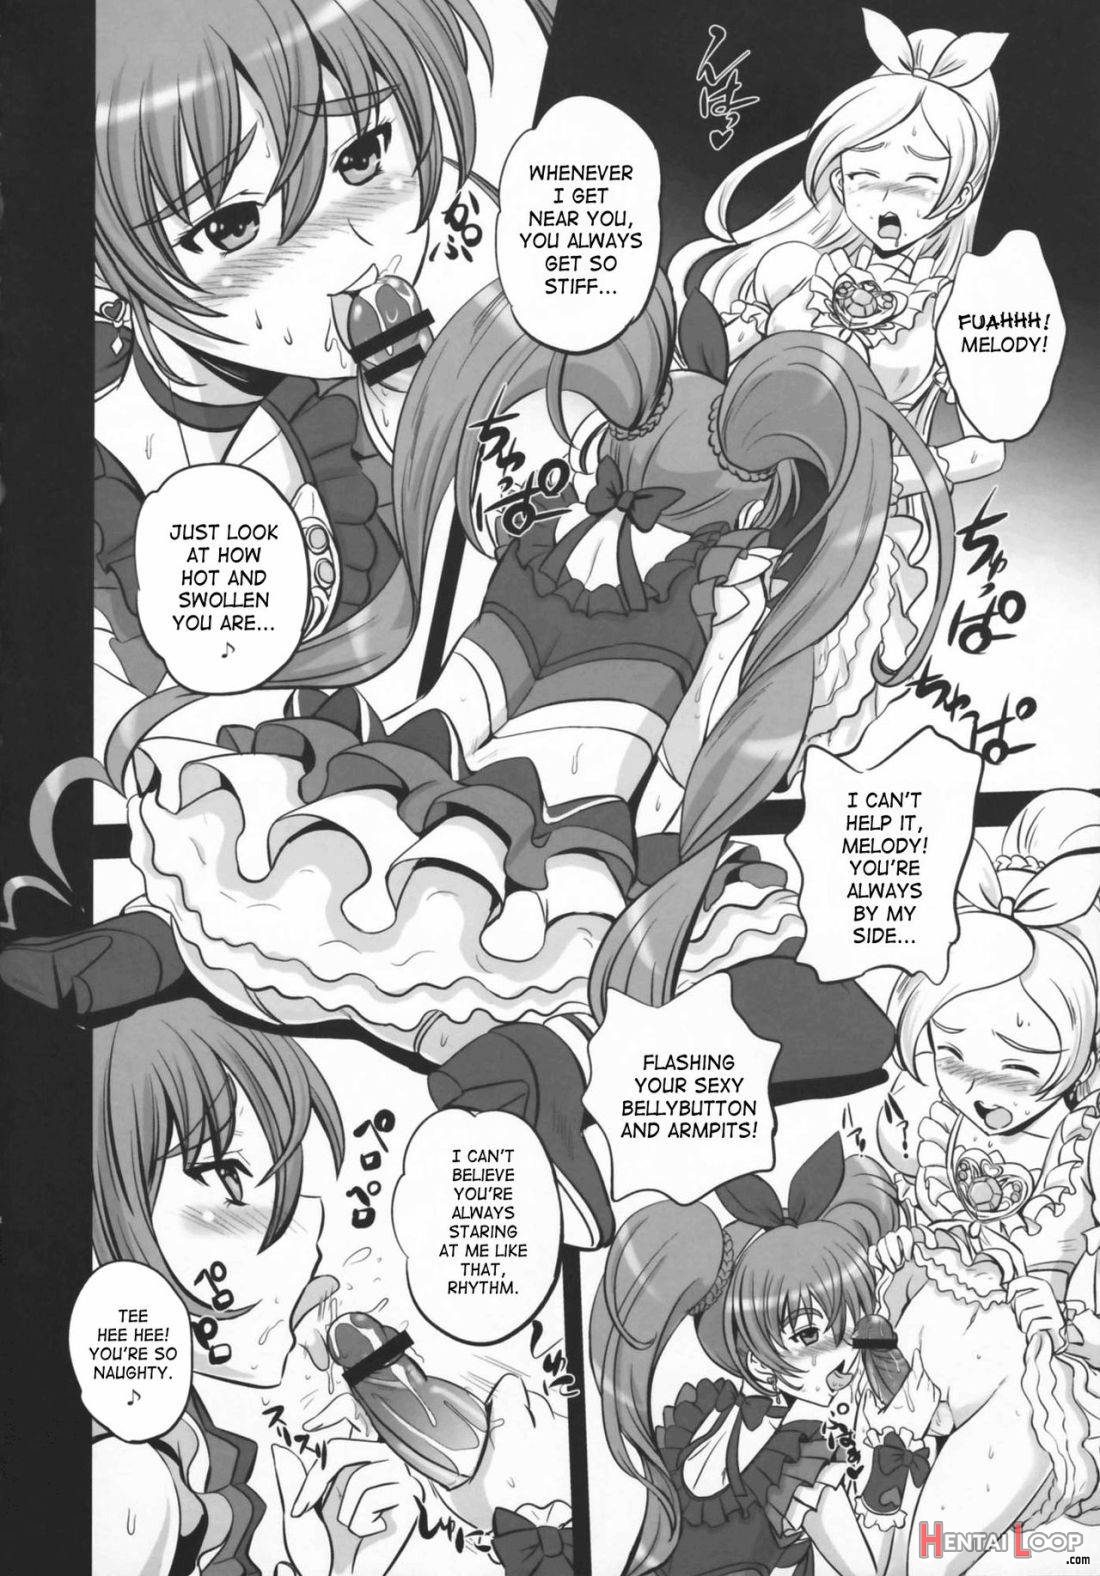 Himitsu no Melody page 3